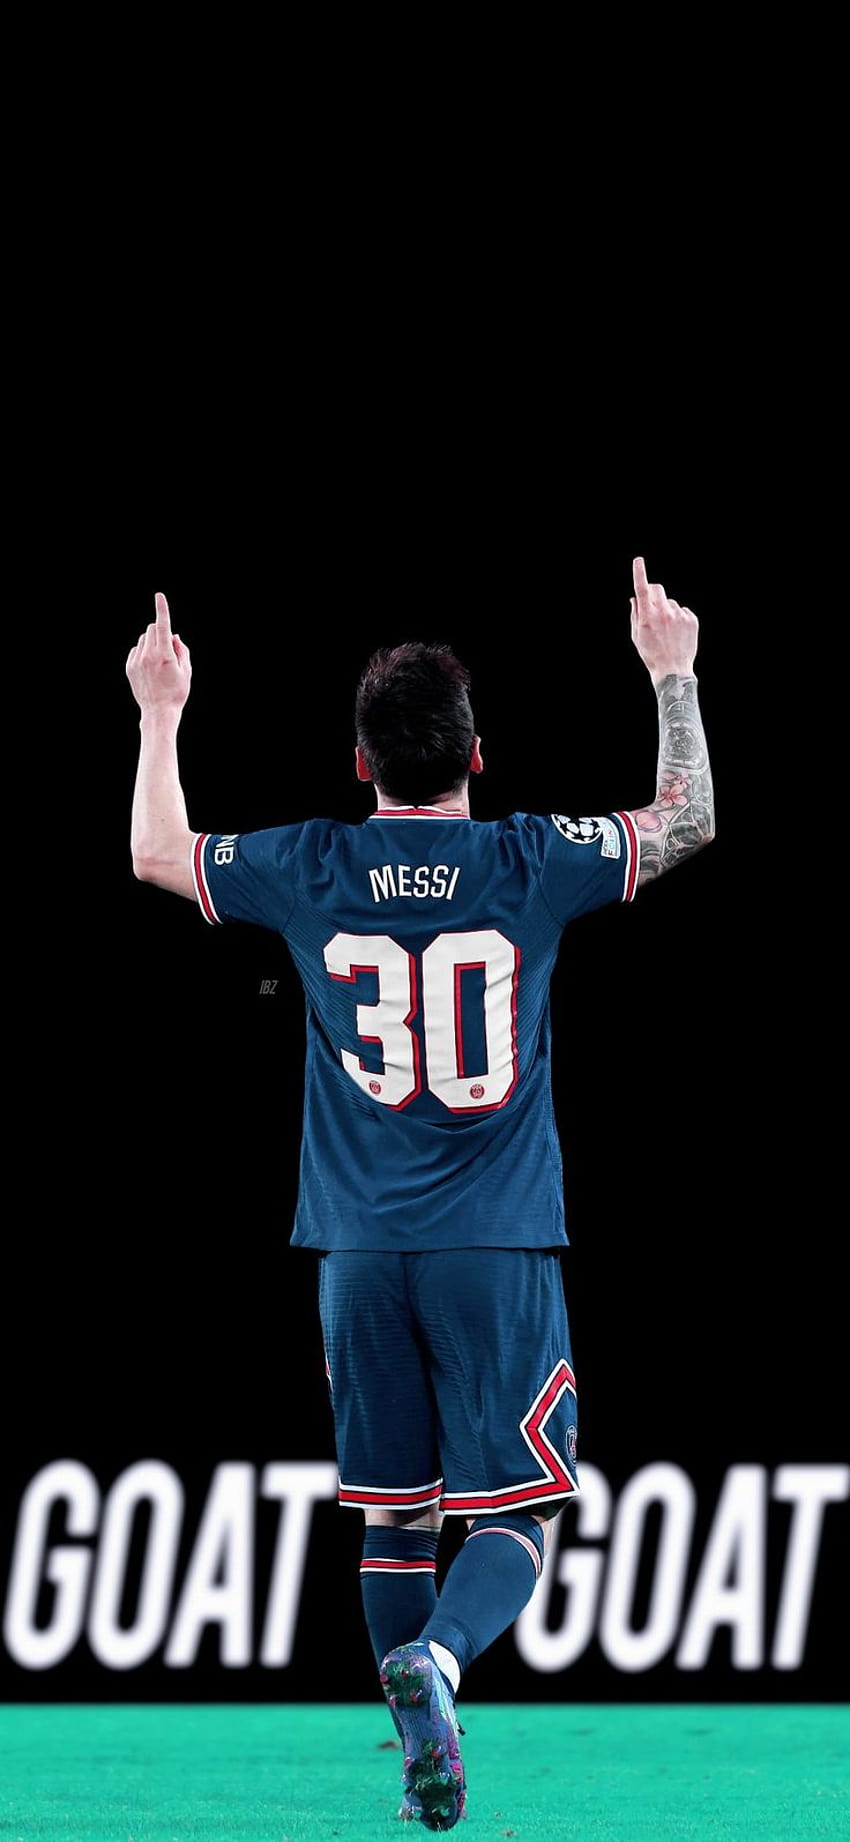 Hình nền Messi sẽ cho bạn một trải nghiệm hoàn toàn mới khi làm nền cho điện thoại hoặc máy tính của bạn. Sự nổi tiếng của Messi không chỉ vì kỹ năng đá bóng xuất sắc mà còn bởi sức hút khó cưỡng của hình ảnh anh ta trên màn hình.